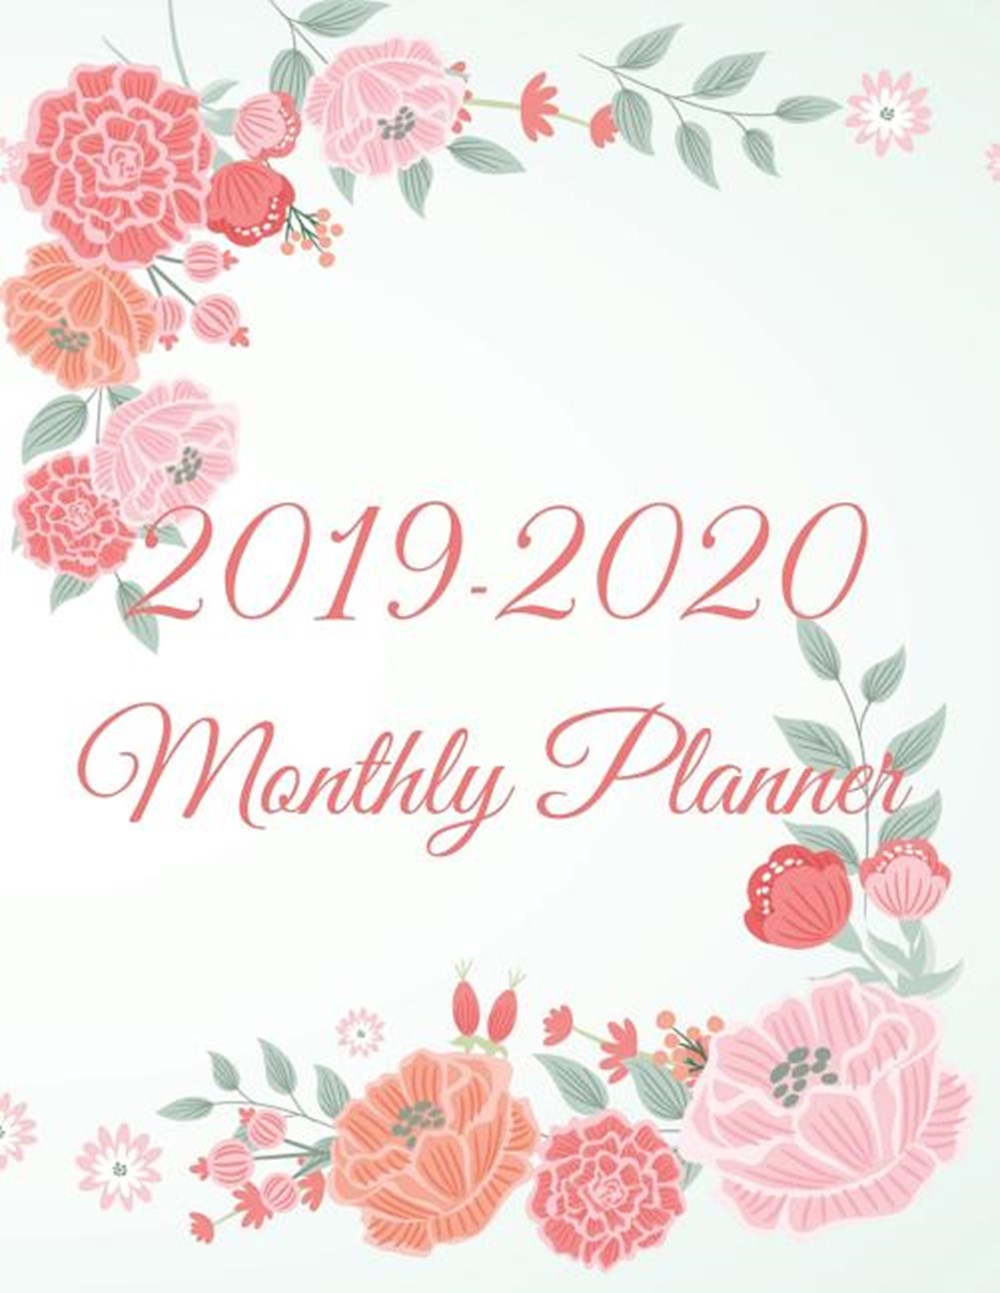 2019-2020 Monthly Planner calander planner 2019-2020 for 24 Monthly Schedule Organizer - Agenda Plan